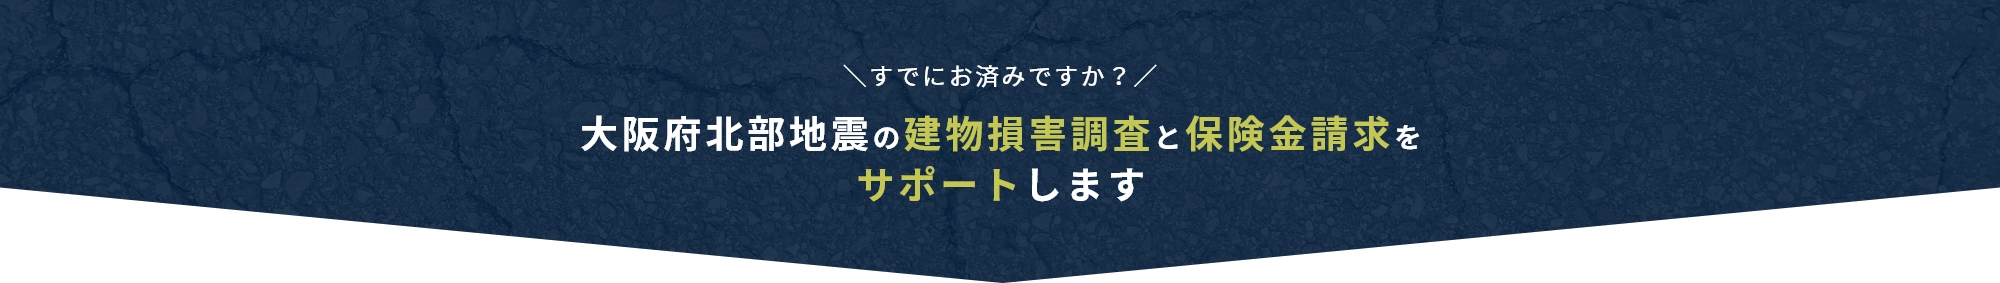 すでにお済みですか？ 大阪府北部地震の建物損害調査と保険金請求を サポートします